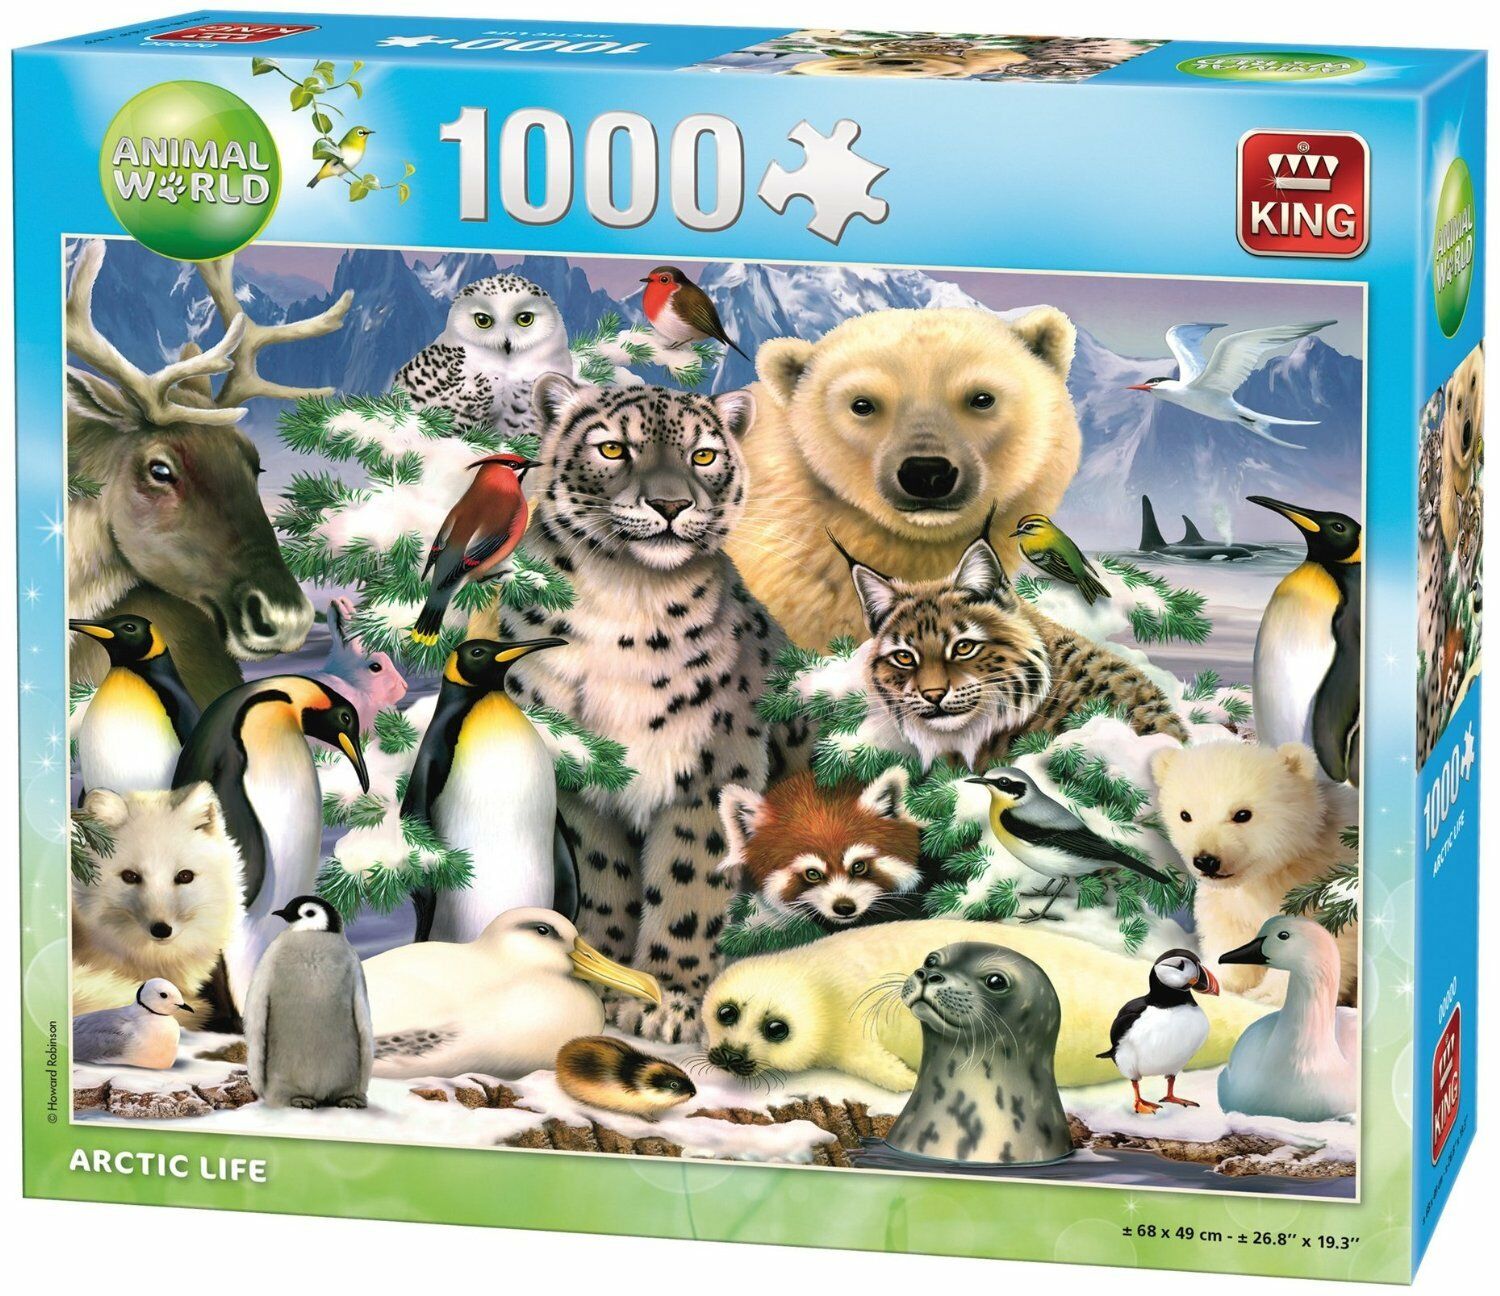 1000 Piece Jigsaw Puzzle 'Arctic Life' Polar Bear Penguins